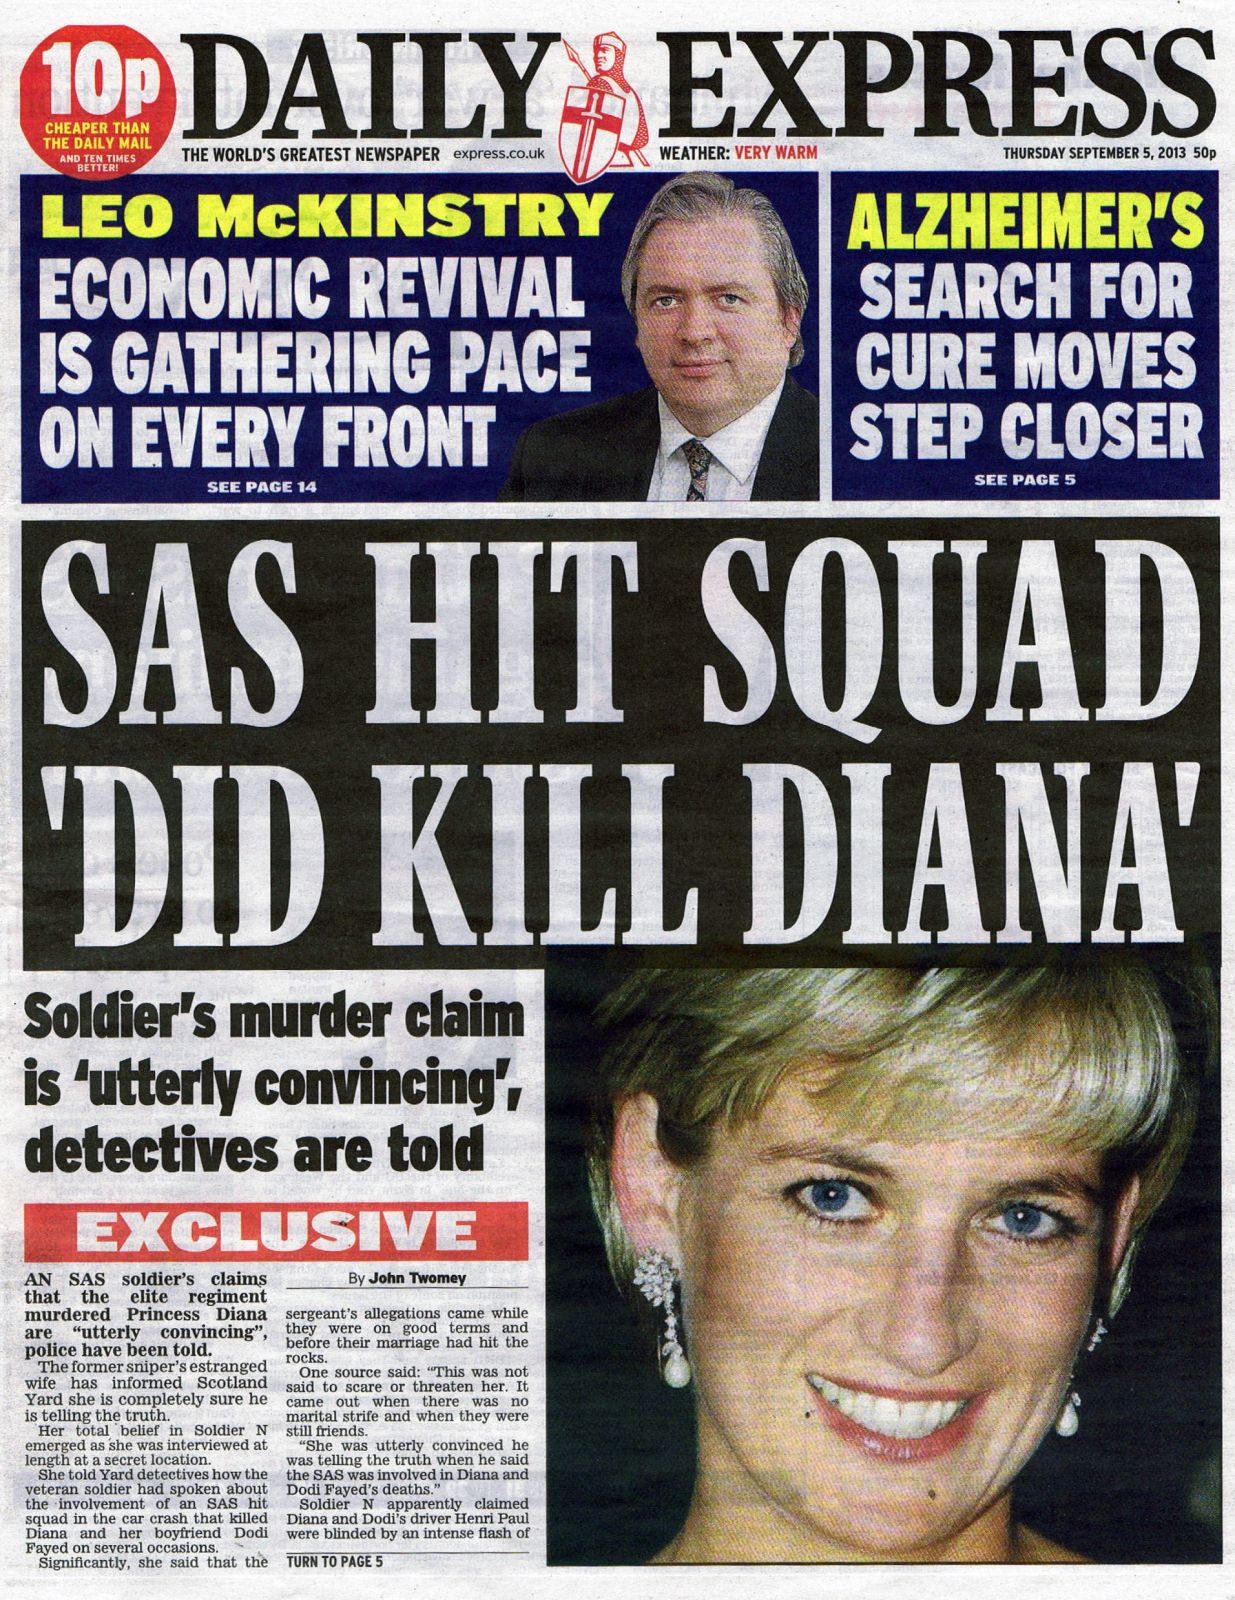 "יחידת חיסול של ה-SAS אכן הרגה את דיאנה", כותרת ה"דיילי אקספרס", 5.9.13